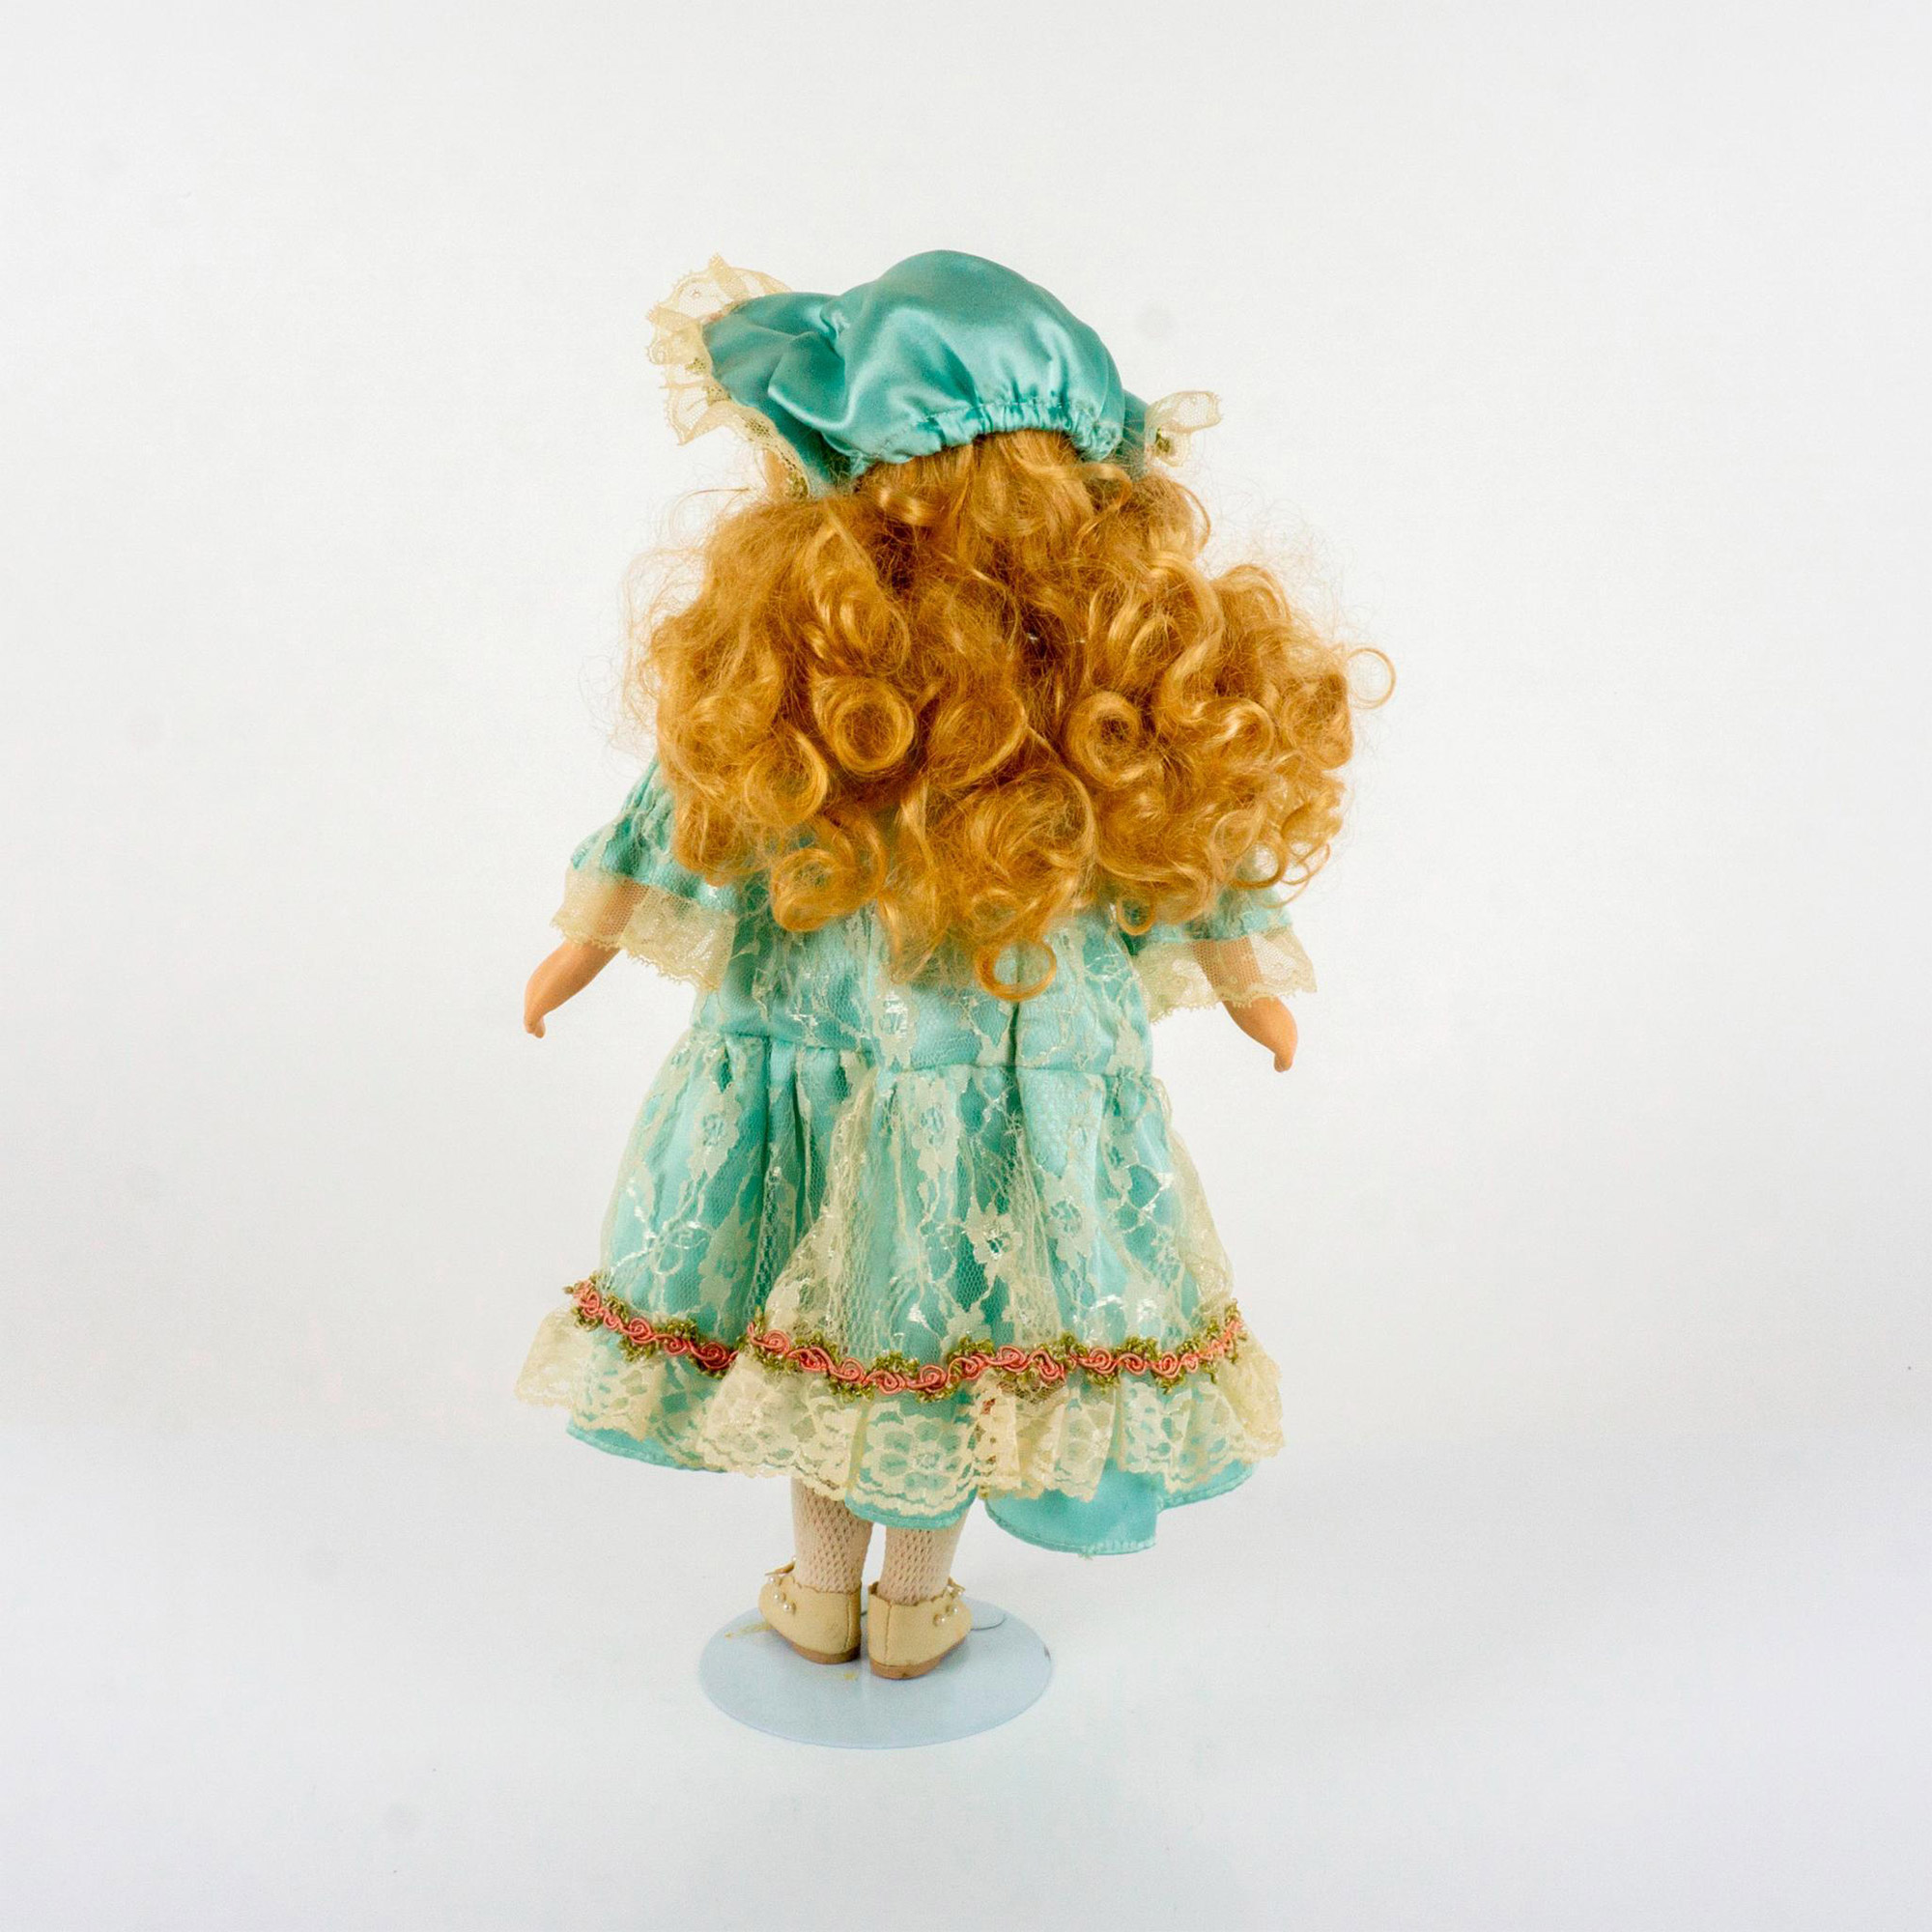 Vintage Porcelain Blonde Doll - Image 2 of 2